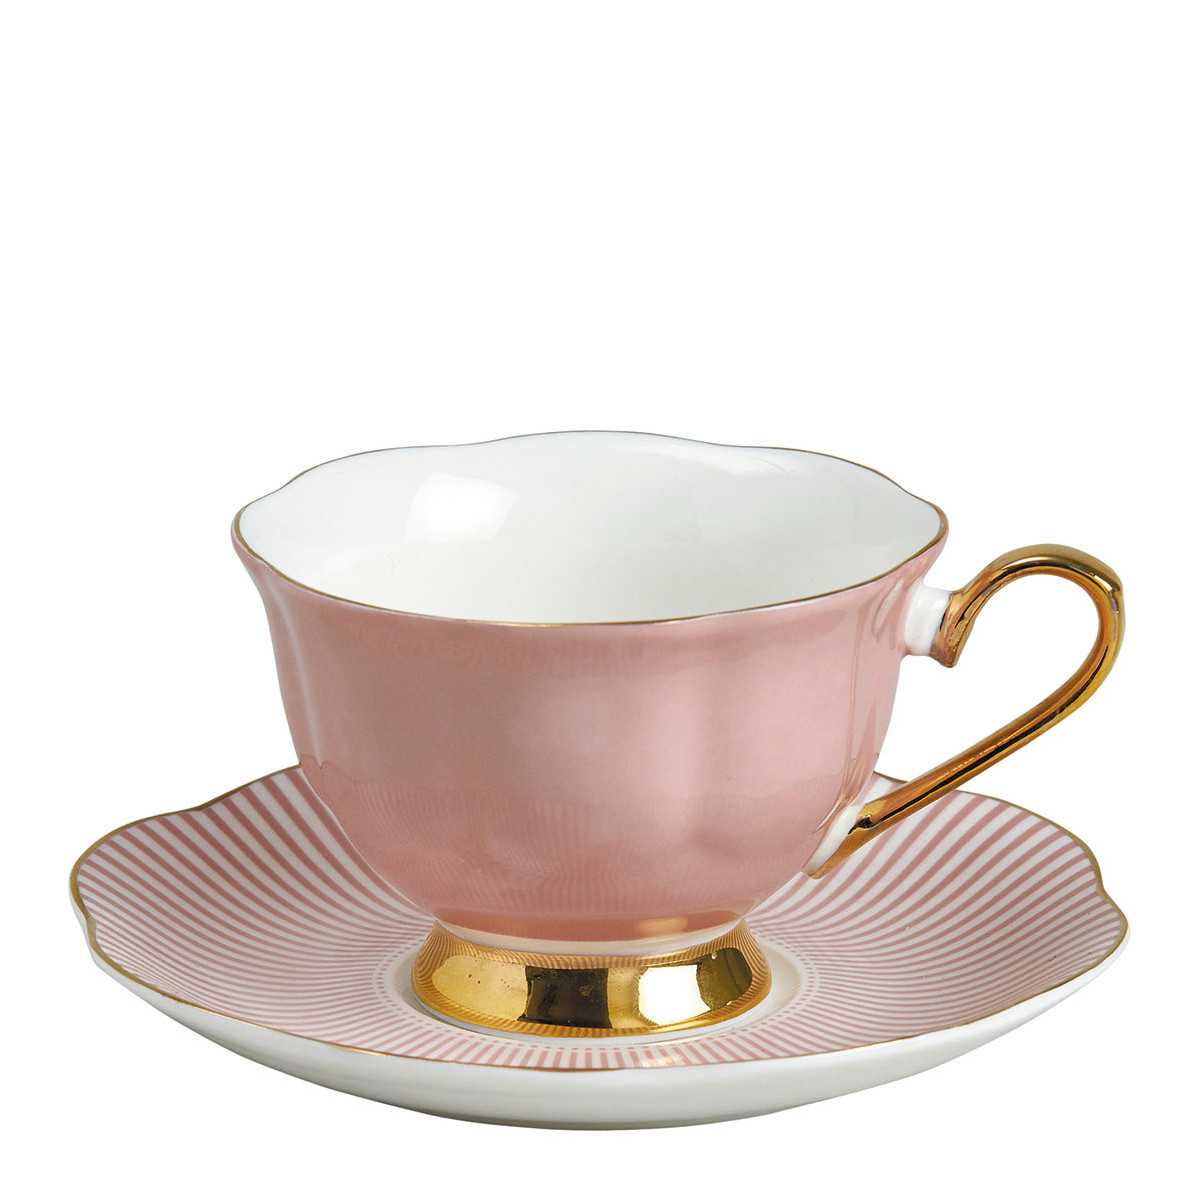 INTERIEUR- DECORATION|Madame de Récamier 2 Teetassen-Set - PinkMATHILDE MTassen und Teekannen